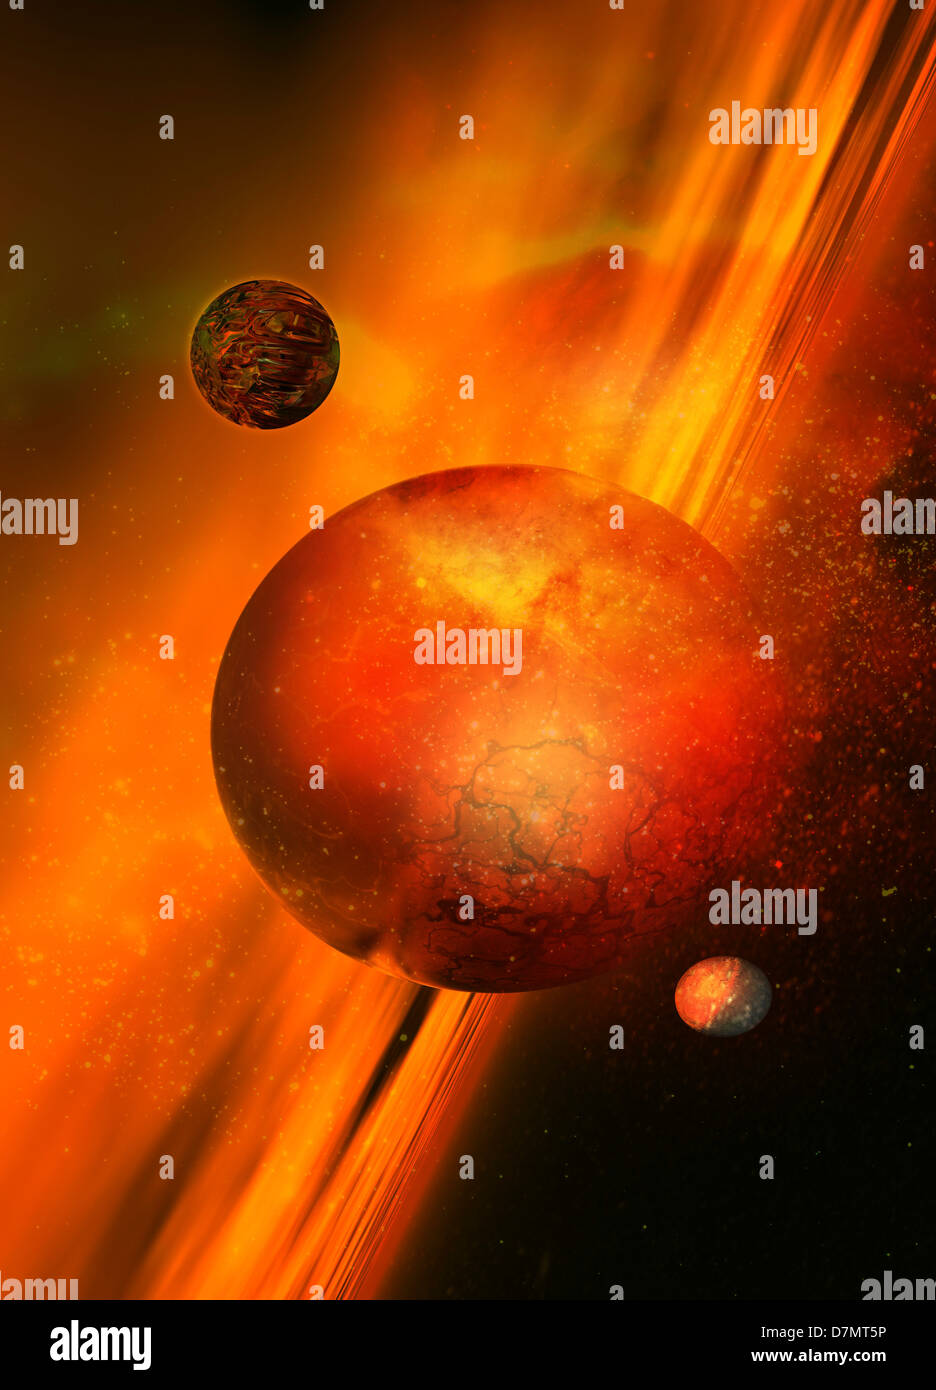 Formación planetaria, ilustraciones Foto de stock